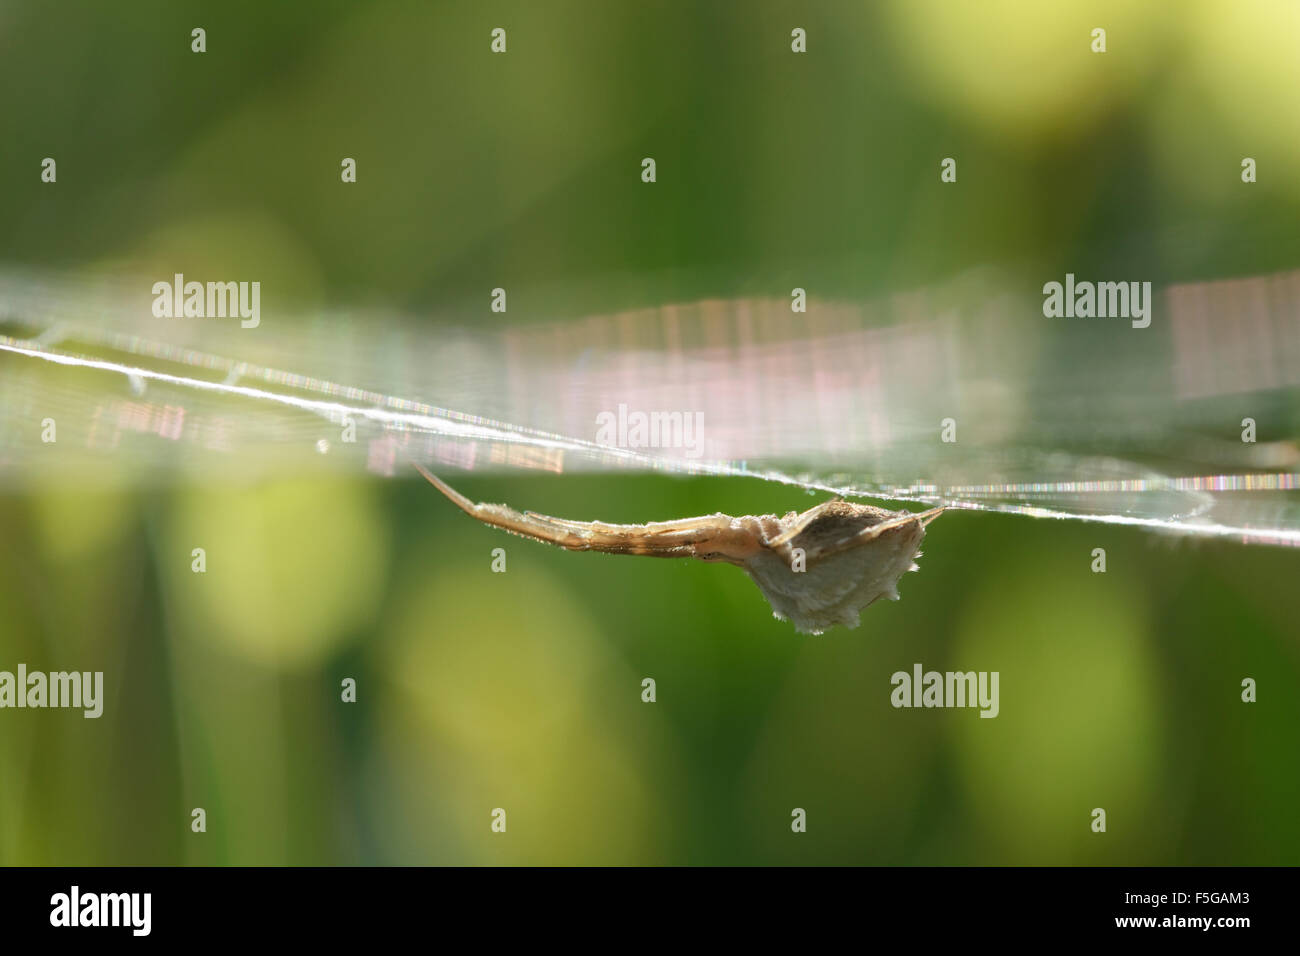 Feder-beinigen SP. Uloborus Walckenaerius Erwachsene Spinne von Spinngewebe in Grünland hängen. Lemnos Insel, Griechenland Stockfoto